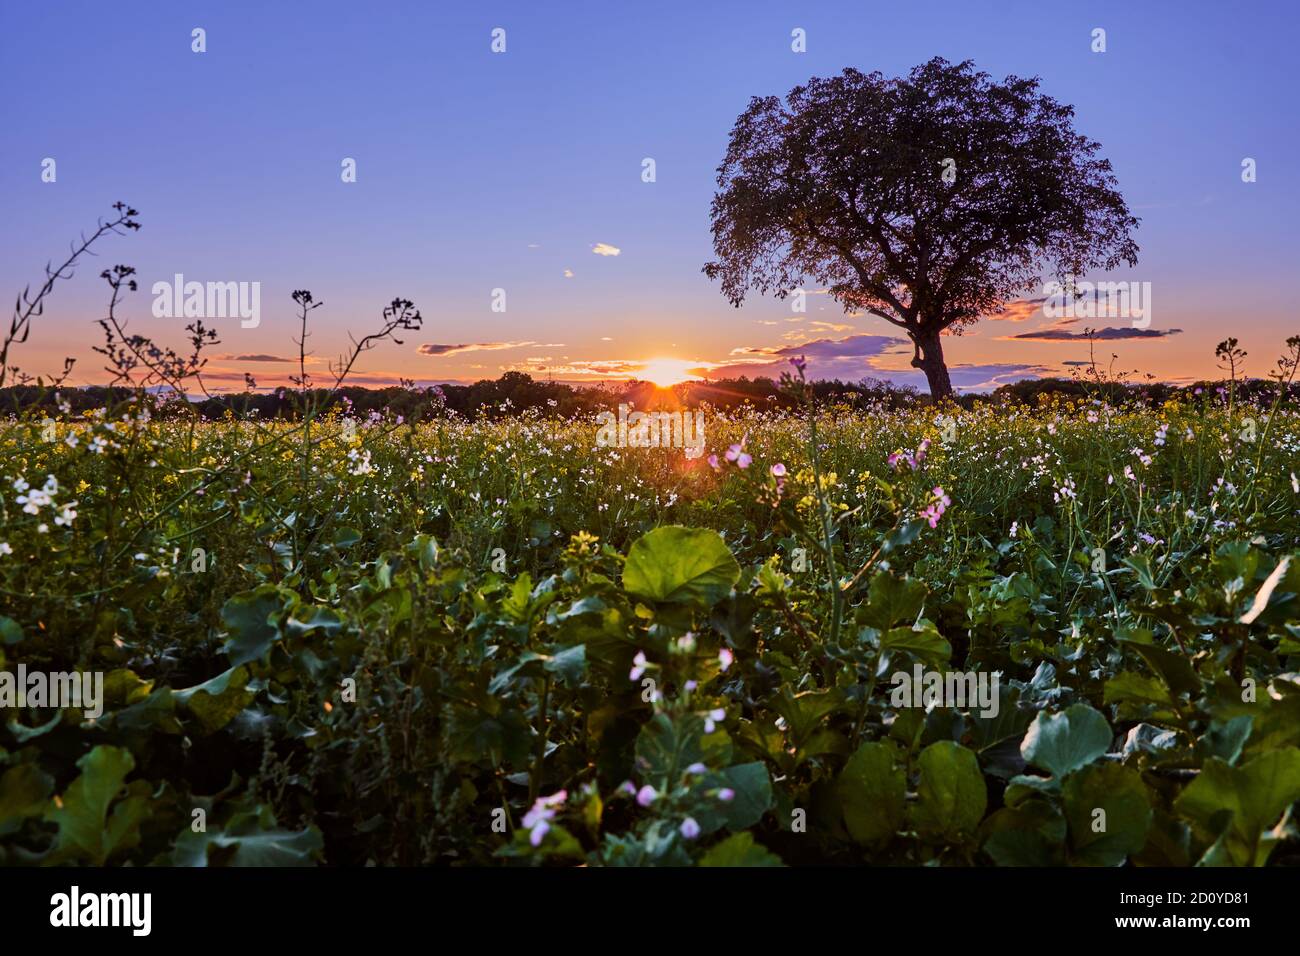 Solitudine albero al tramonto in bellissimo paesaggio con prato fiorito, vista ad angolo basso. Foto Stock